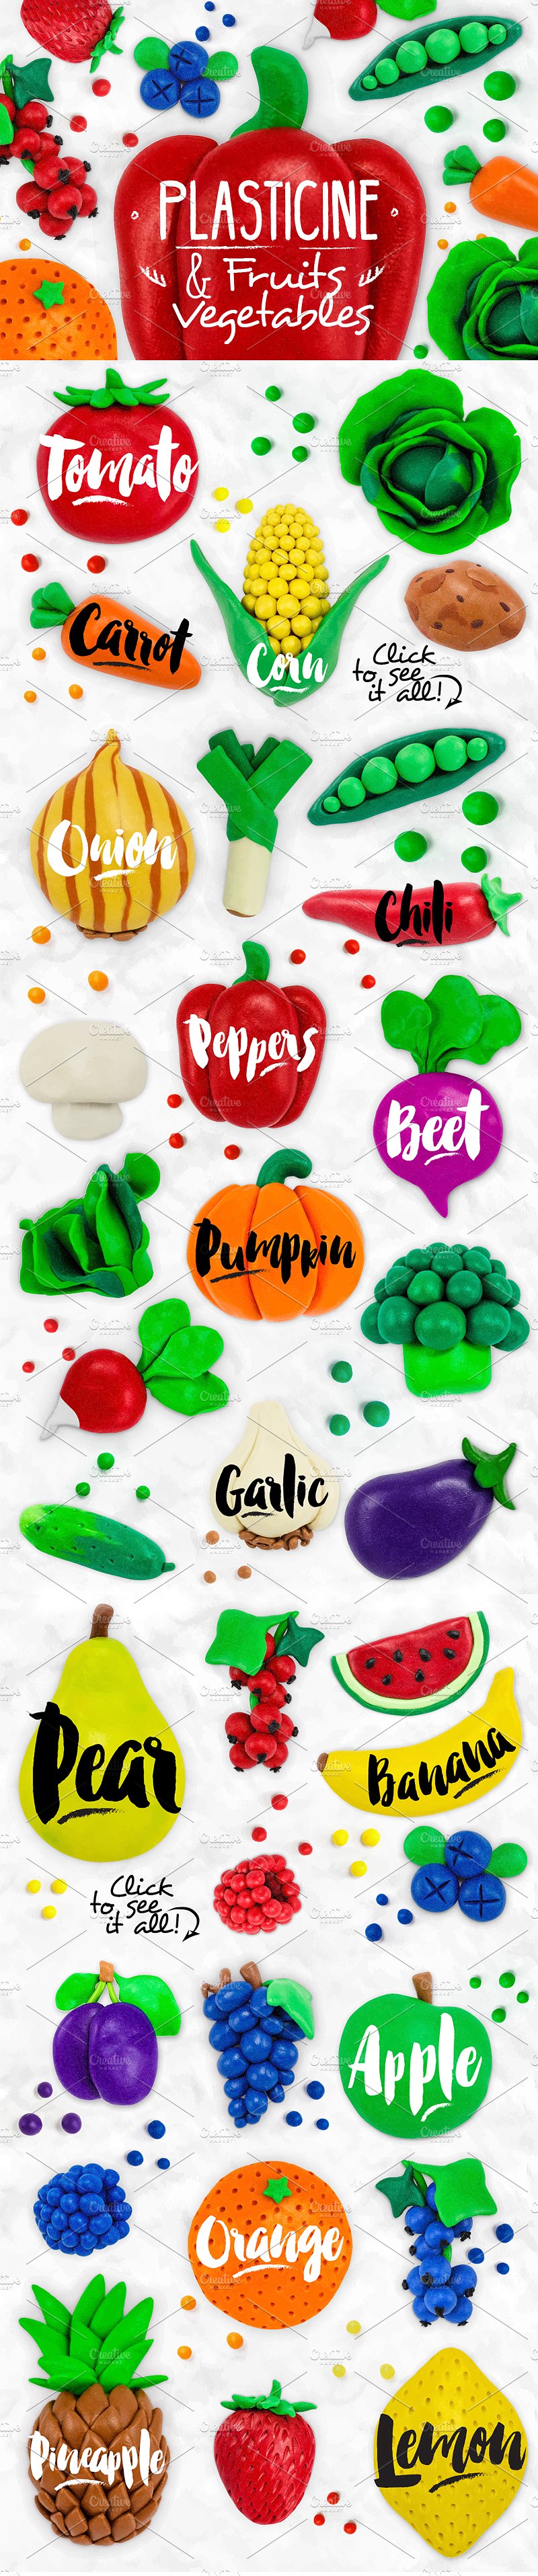 橡皮泥水果和蔬菜设计素材 Set-Plasticine-Fr